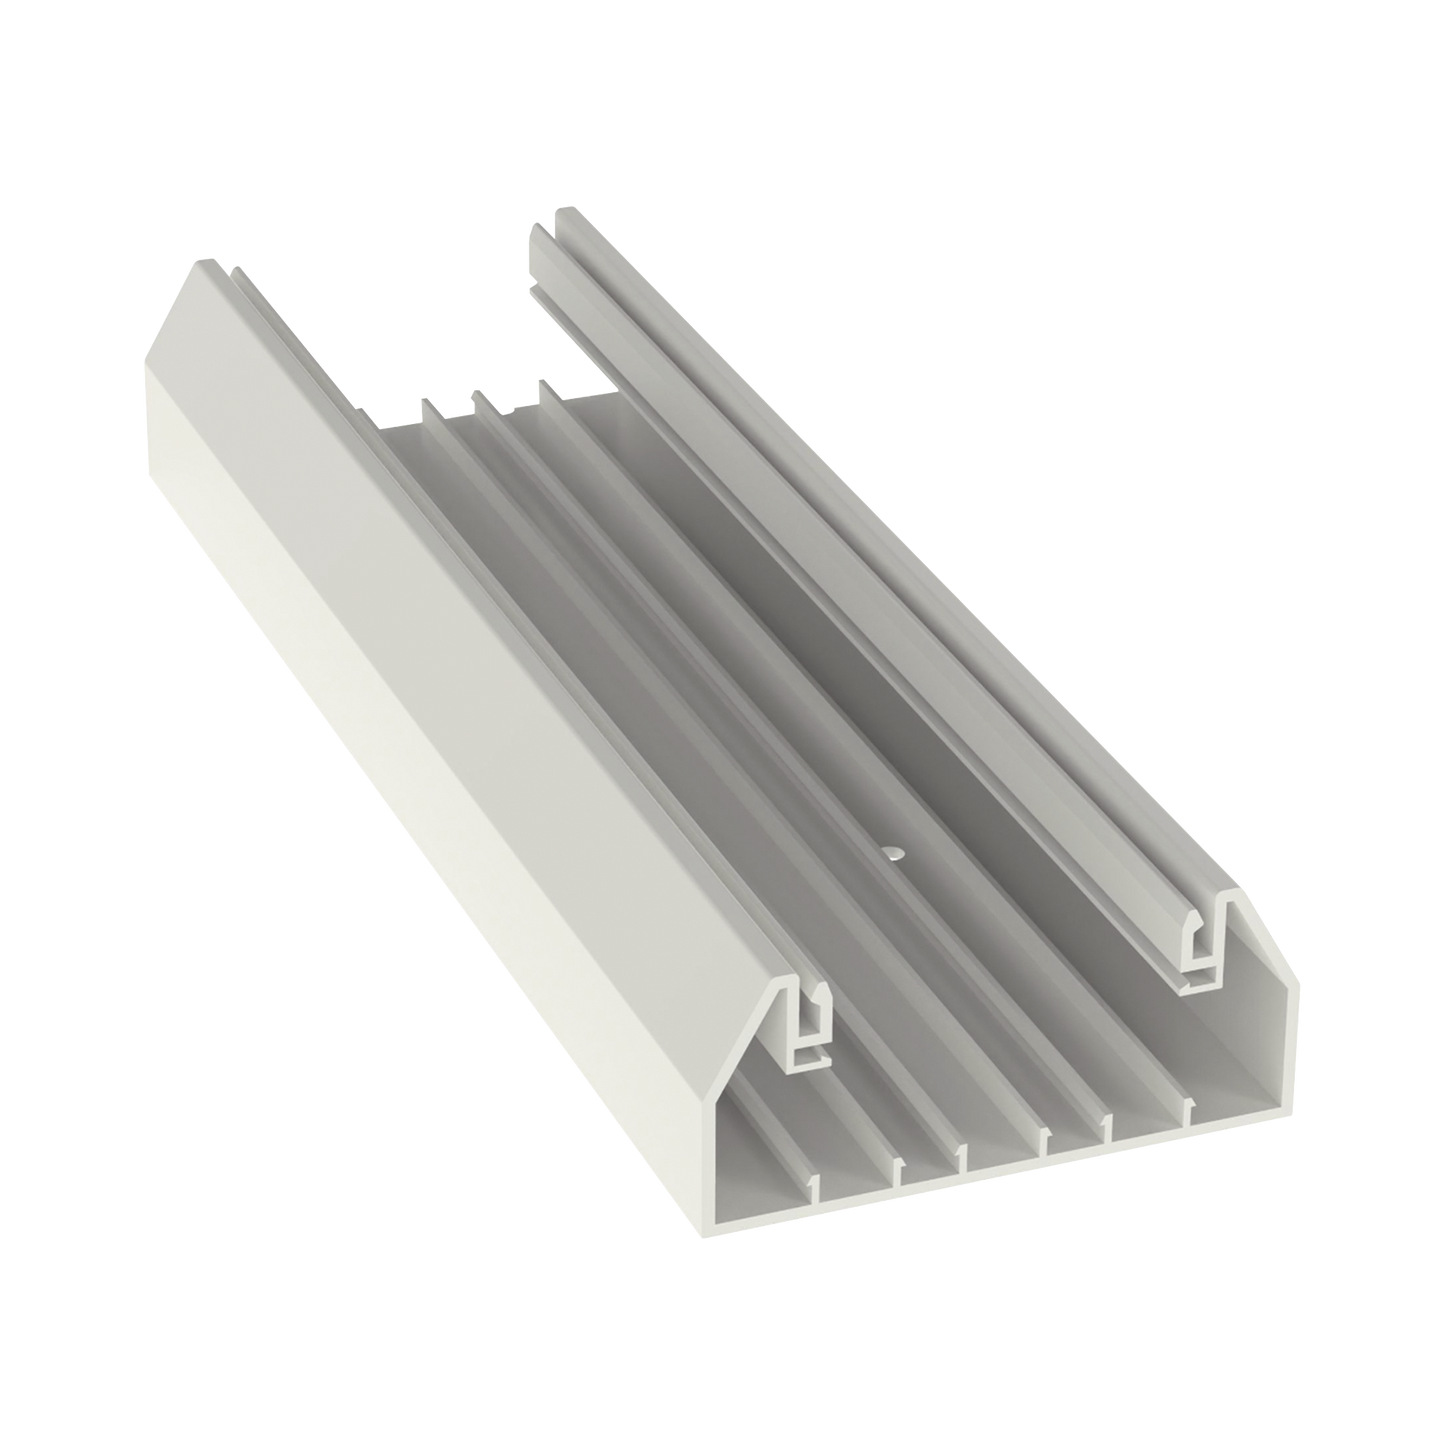 Base para canaleta T-70, de PVC rígido, con orificios perforados para montaje, 103.3 x 44.9 x 2400 mm, Color Blanco Mate